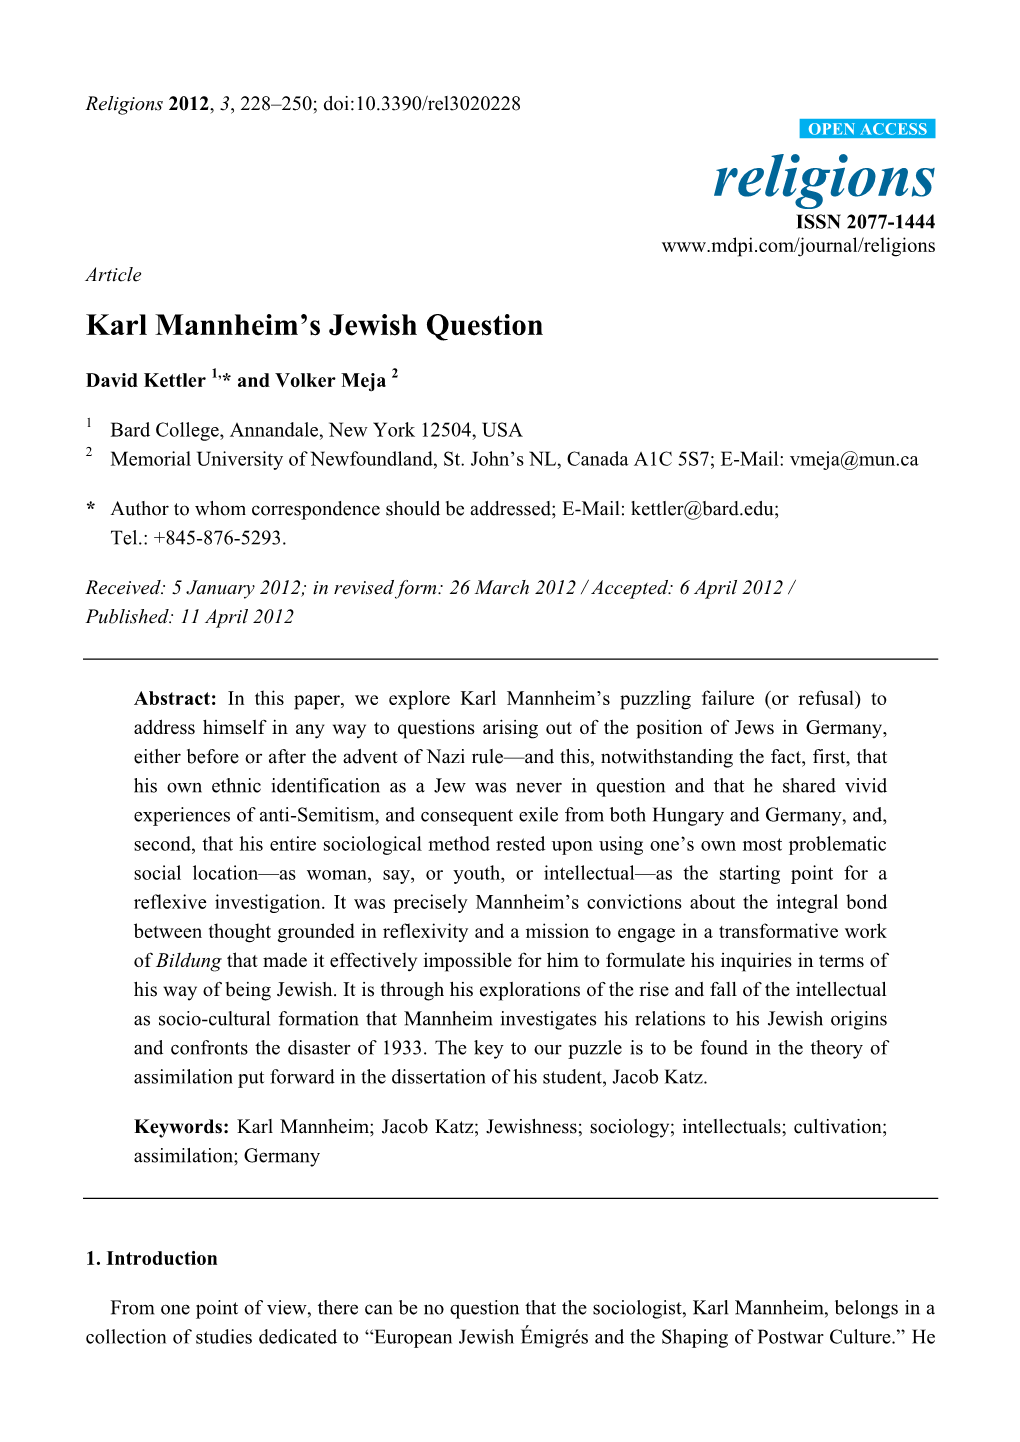 Karl Mannheim's Jewish Question